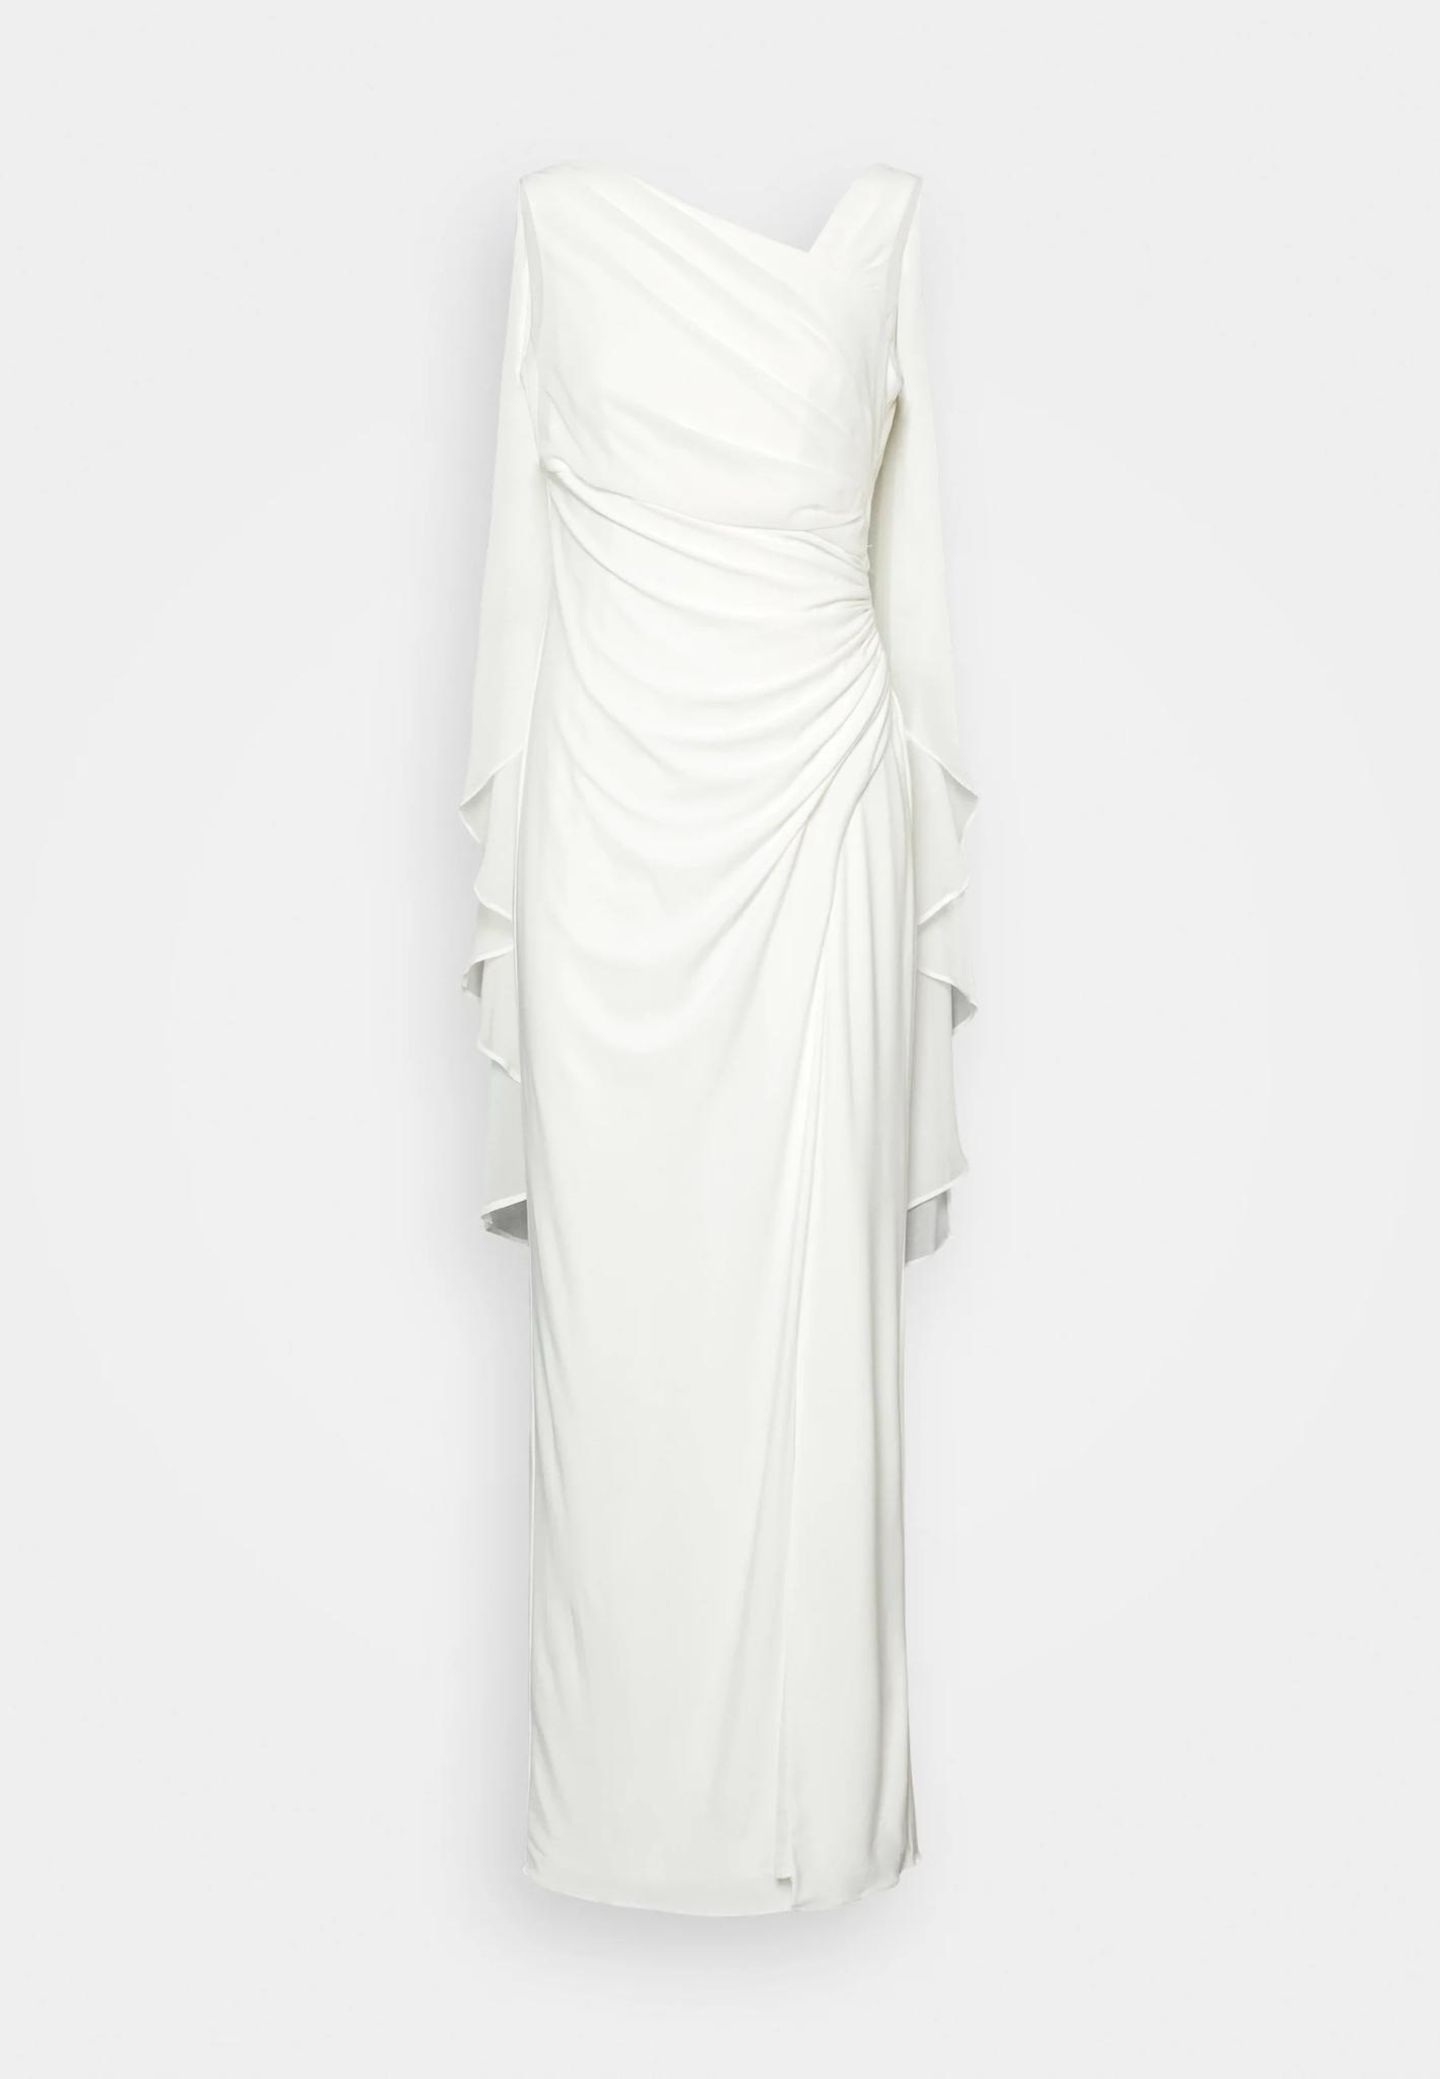 Dieses Kleid würde nicht nur zu einer Hochzeit, sondern auch zu einer Preisverleihung passen. Das Cape macht das bodenlange Kleid zum ultimativen Hollywood-Piece in Weiß. Von Adrianna Papell, etwa 199 Euro.